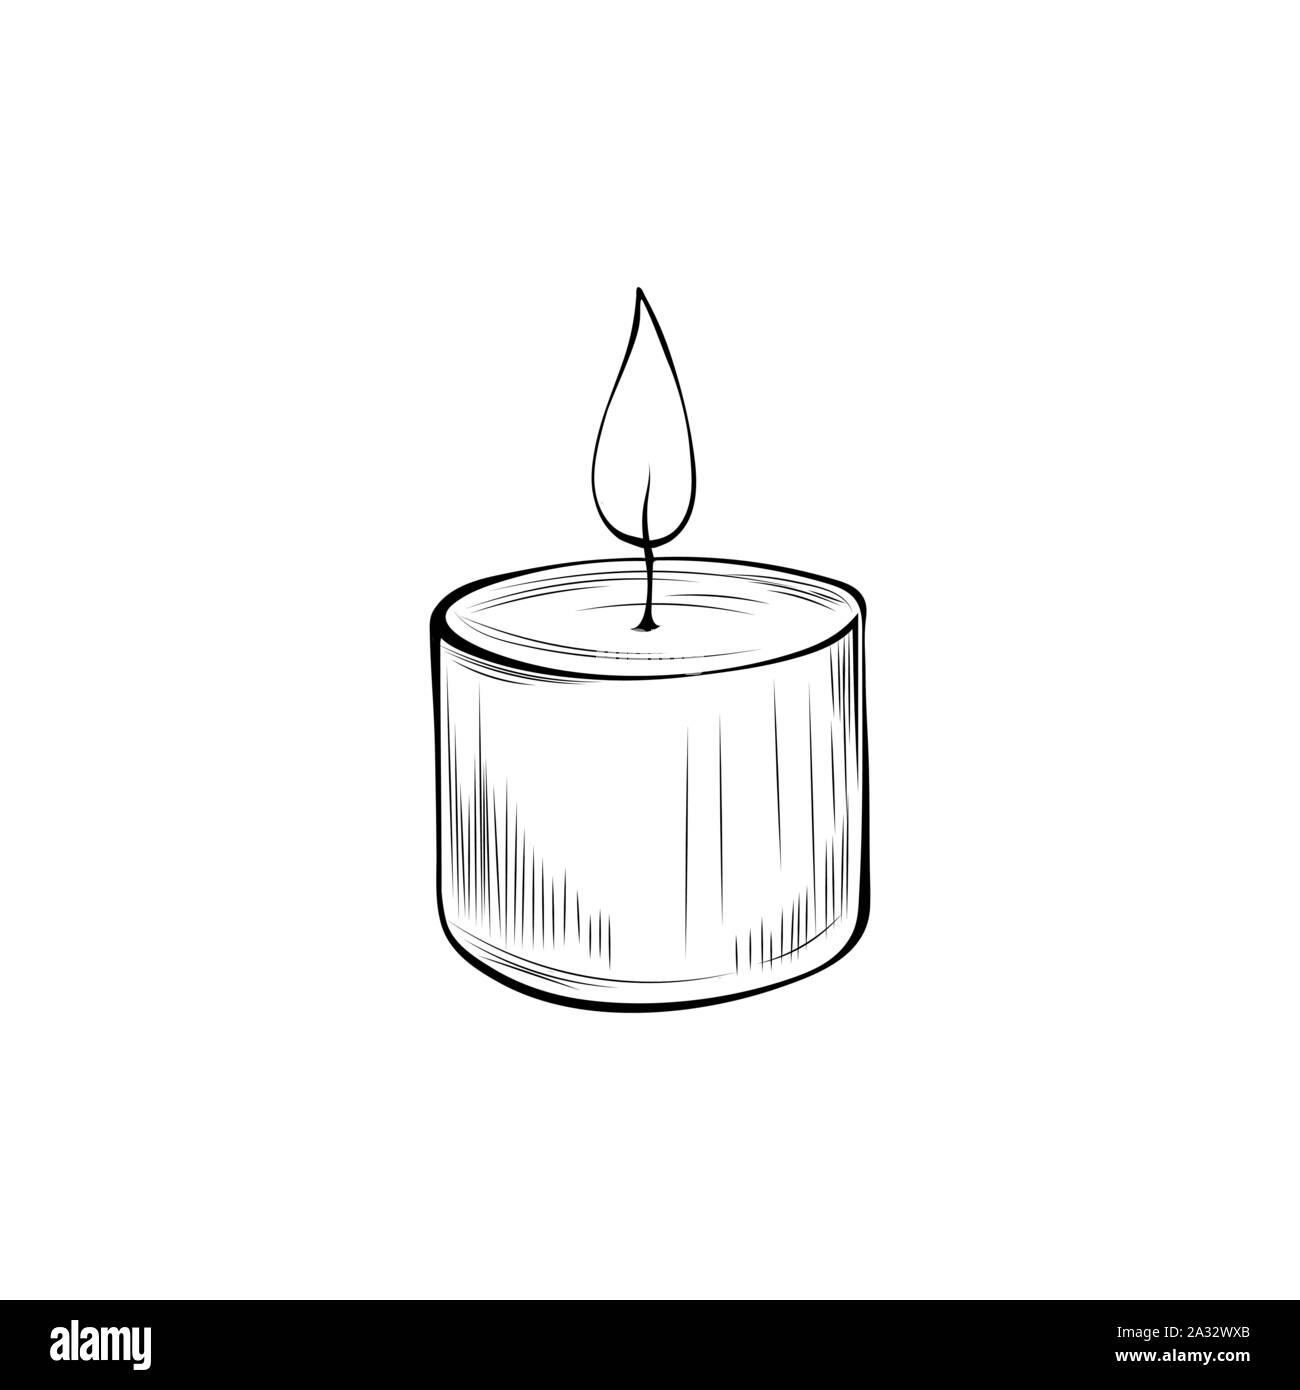 Brennende Kerze Hand gezeichnet Vector Illustration. Bei Kerzenschein das  Symbol auf weißem Hintergrund. Dekorative Aromatherapie Zubehör, leuchtende  runde Leuchter Schwarzweiß-Zeichnung Stock-Vektorgrafik - Alamy